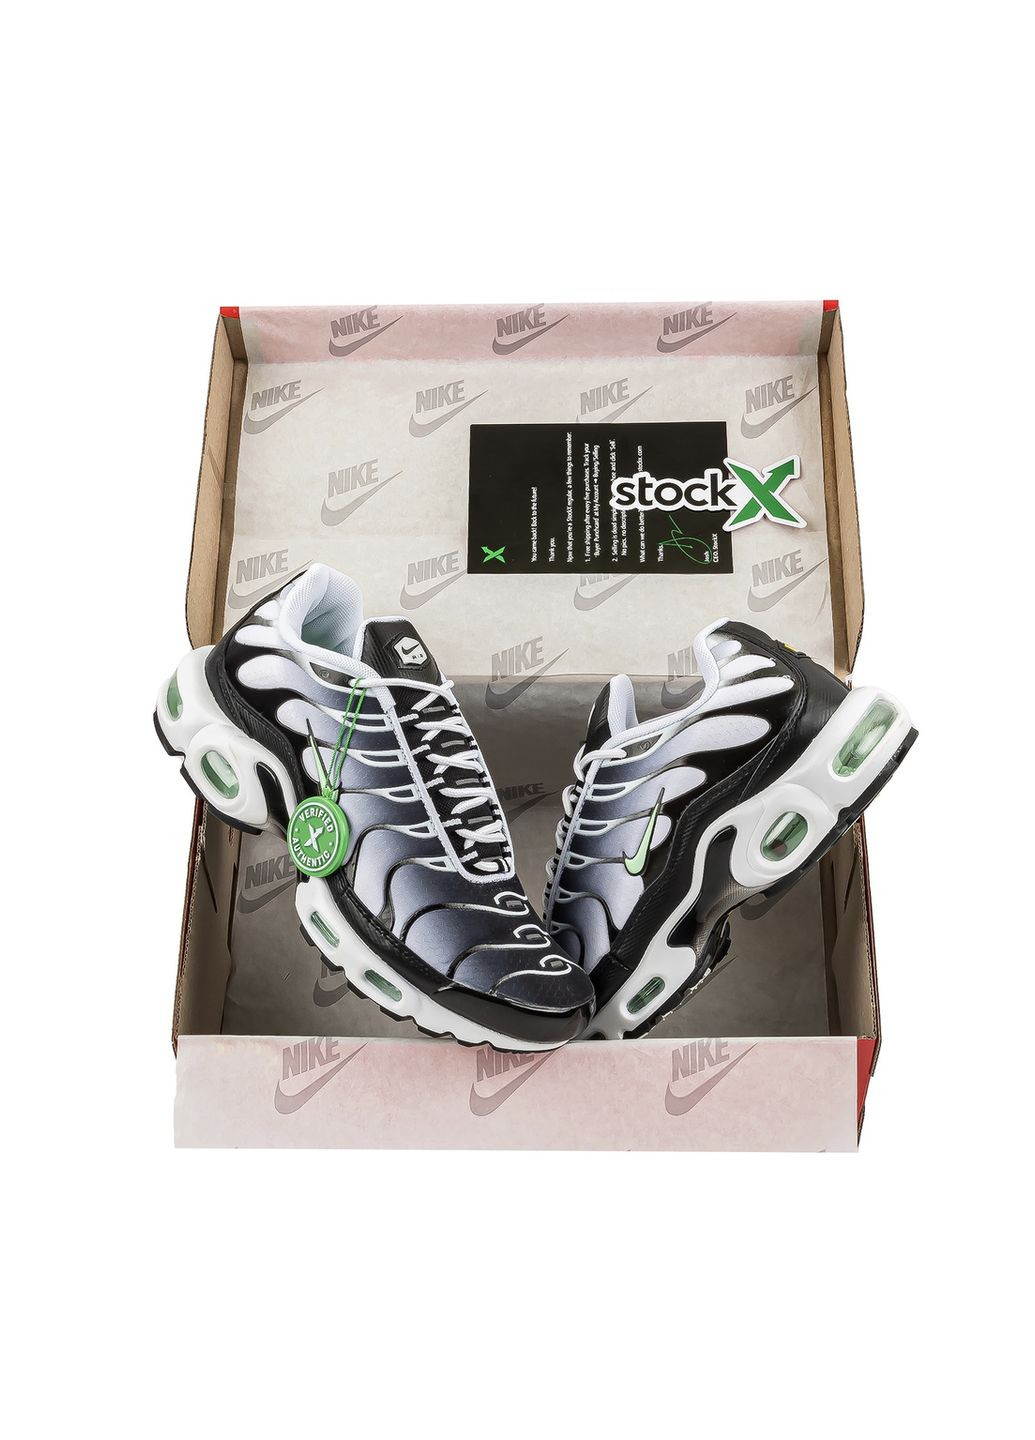 Комбіновані Осінні кросівки чоловічі white black mint green, вьетнам Nike Air Max Plus